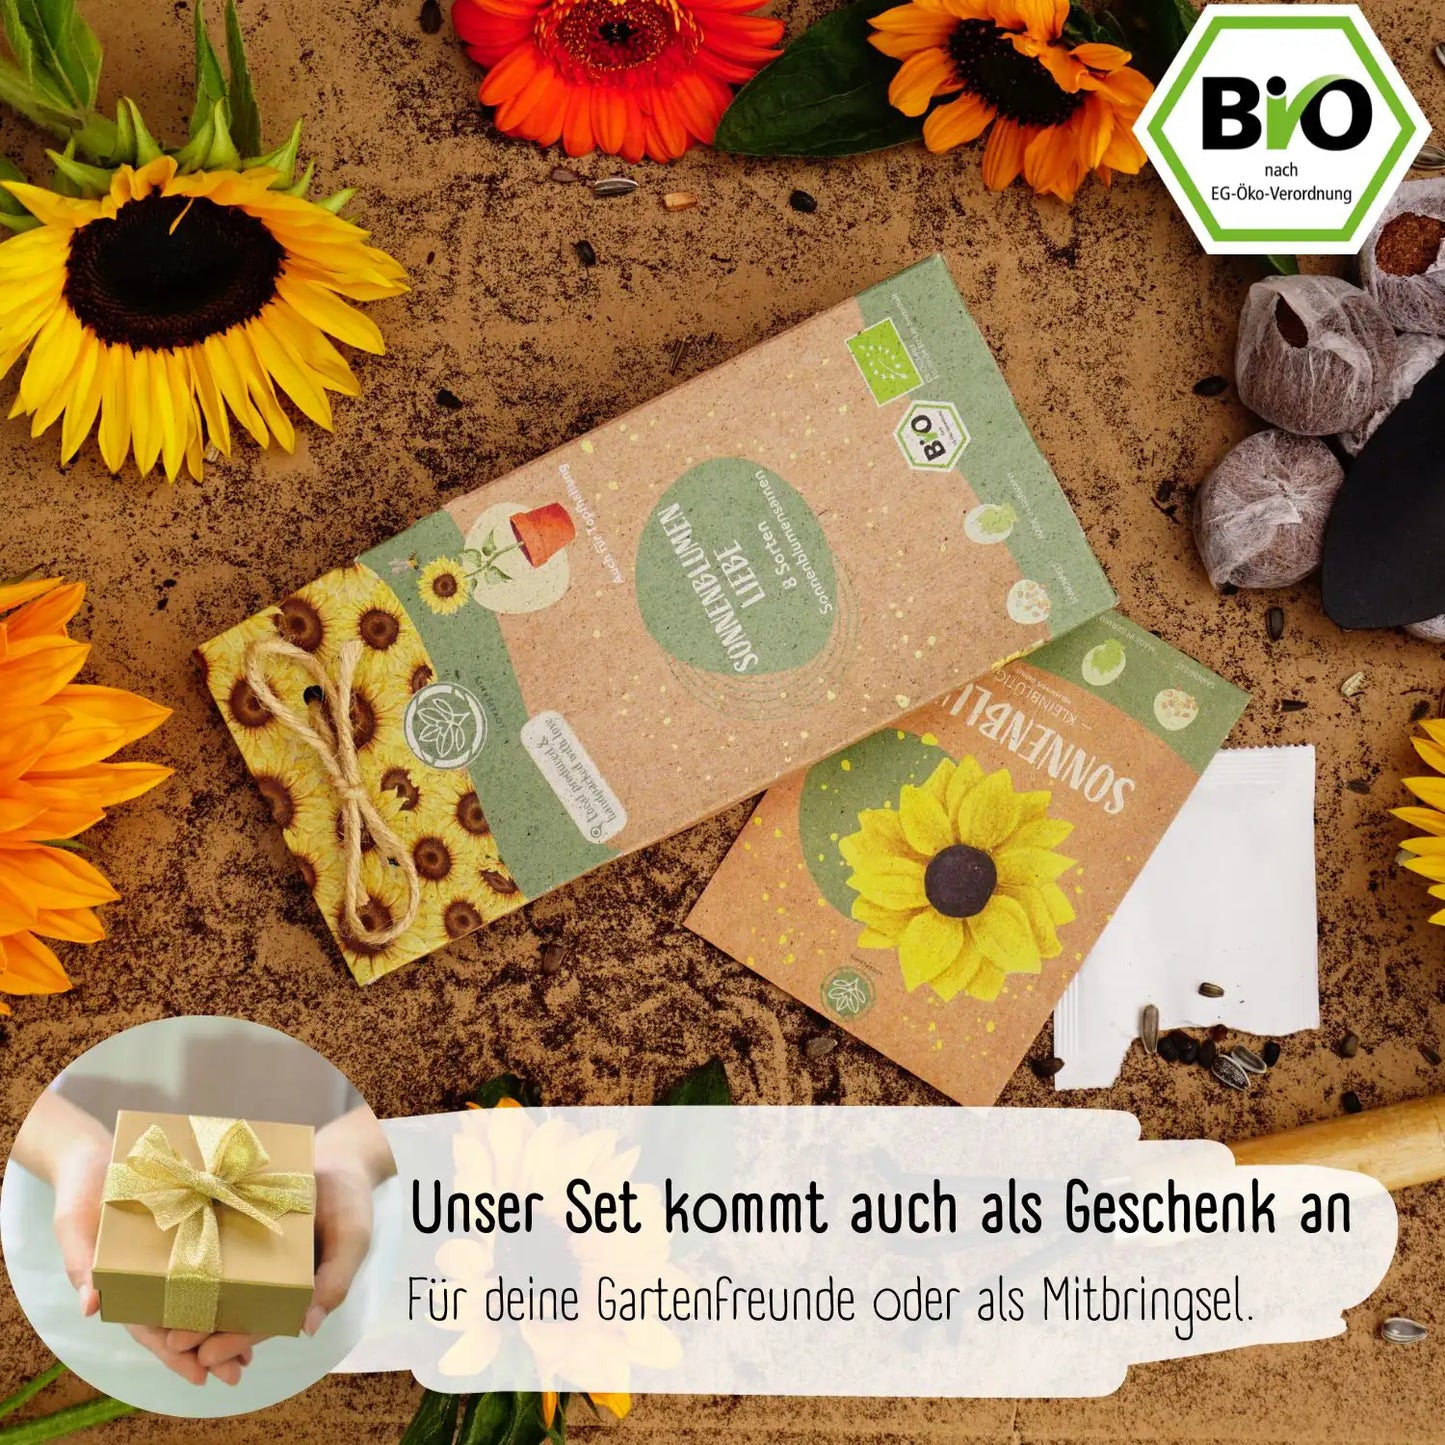 Bio Sonnenblumensamen Set kaufen als Geschenk